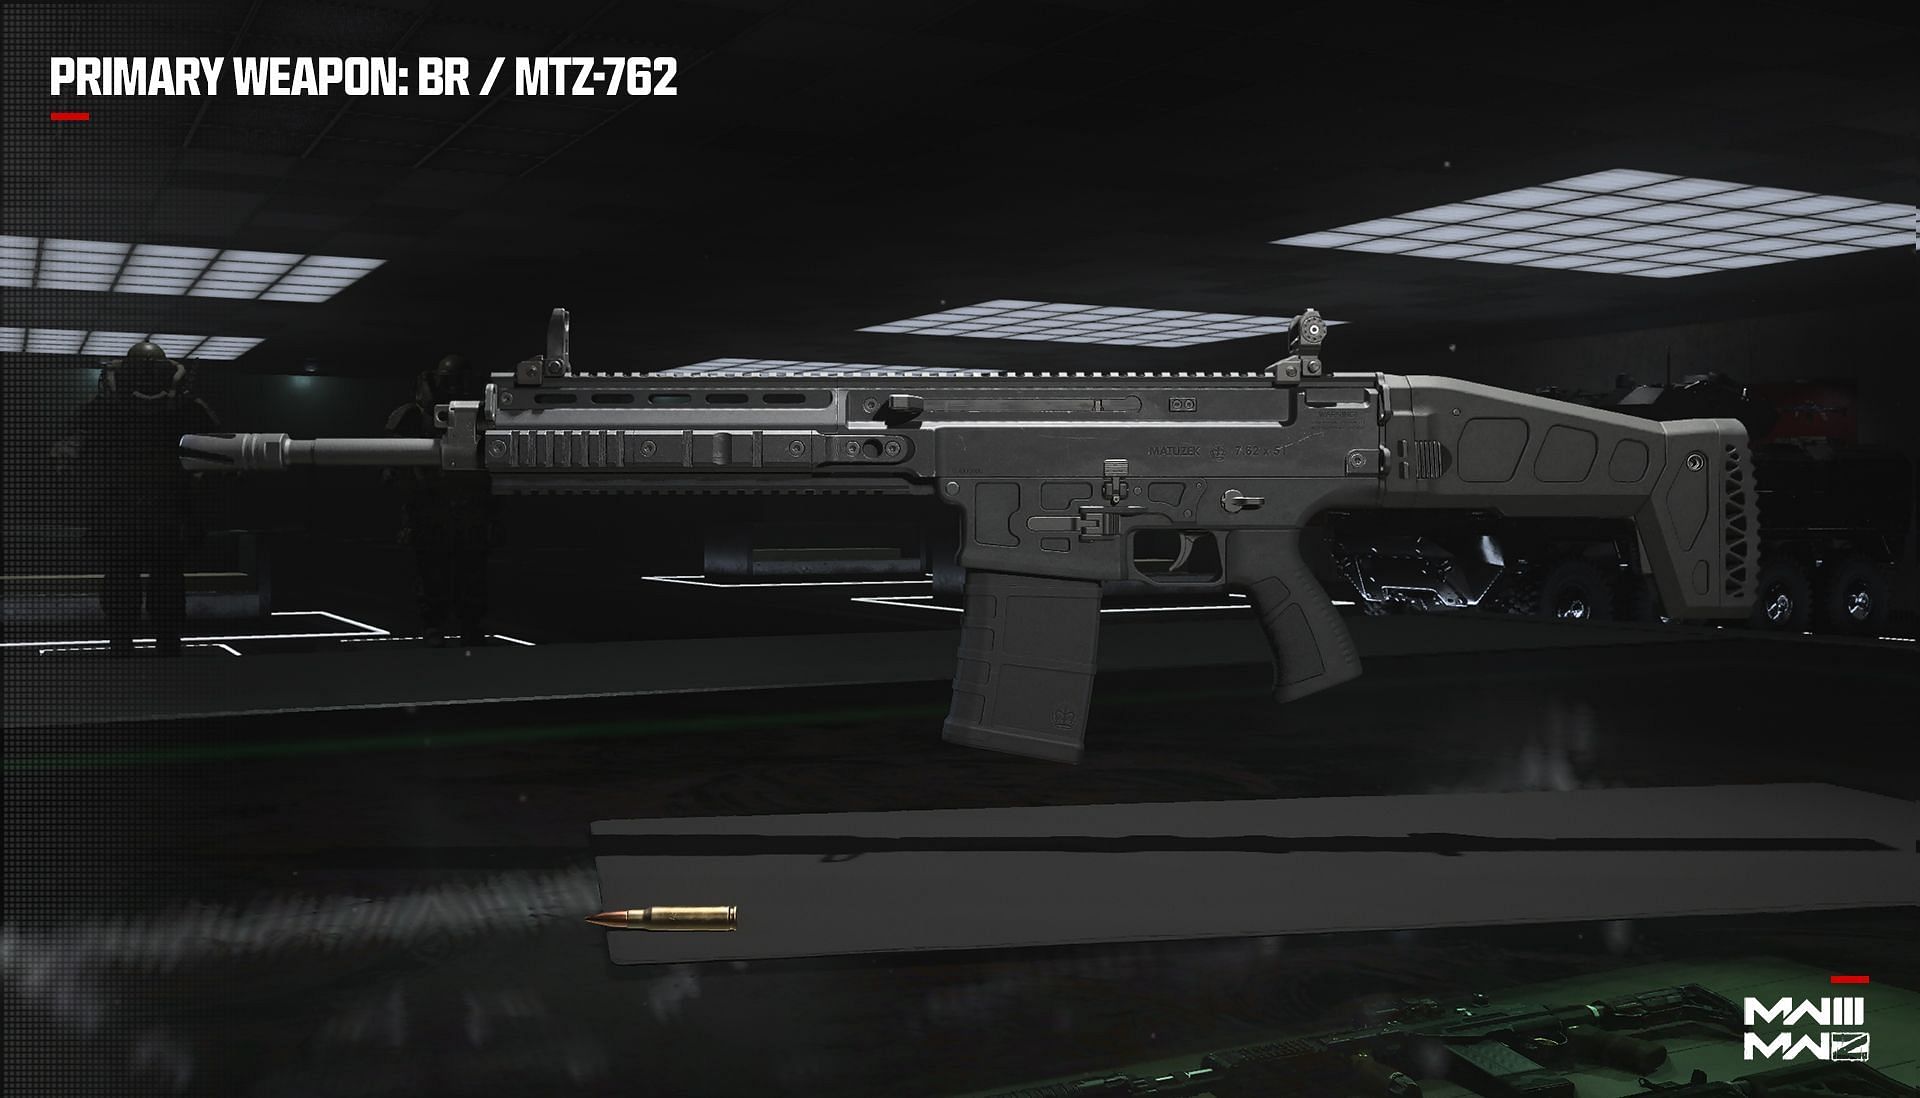 MTZ - 762 in Warzone (Image via Activision)